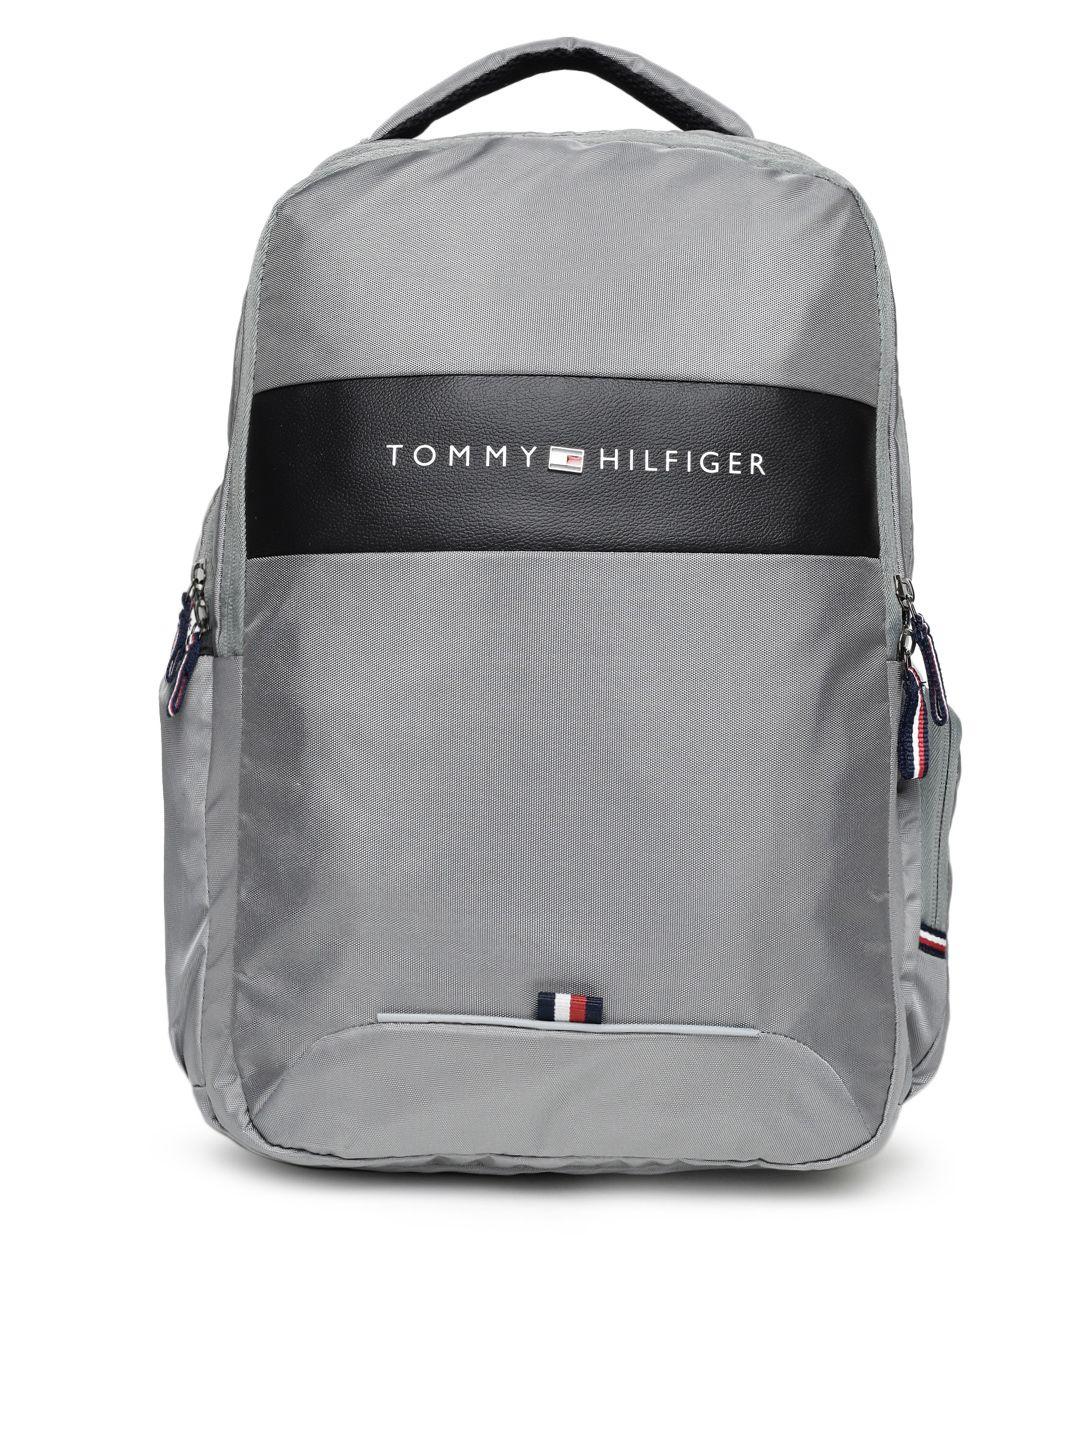 tommy hilfiger unisex grey solid backpack